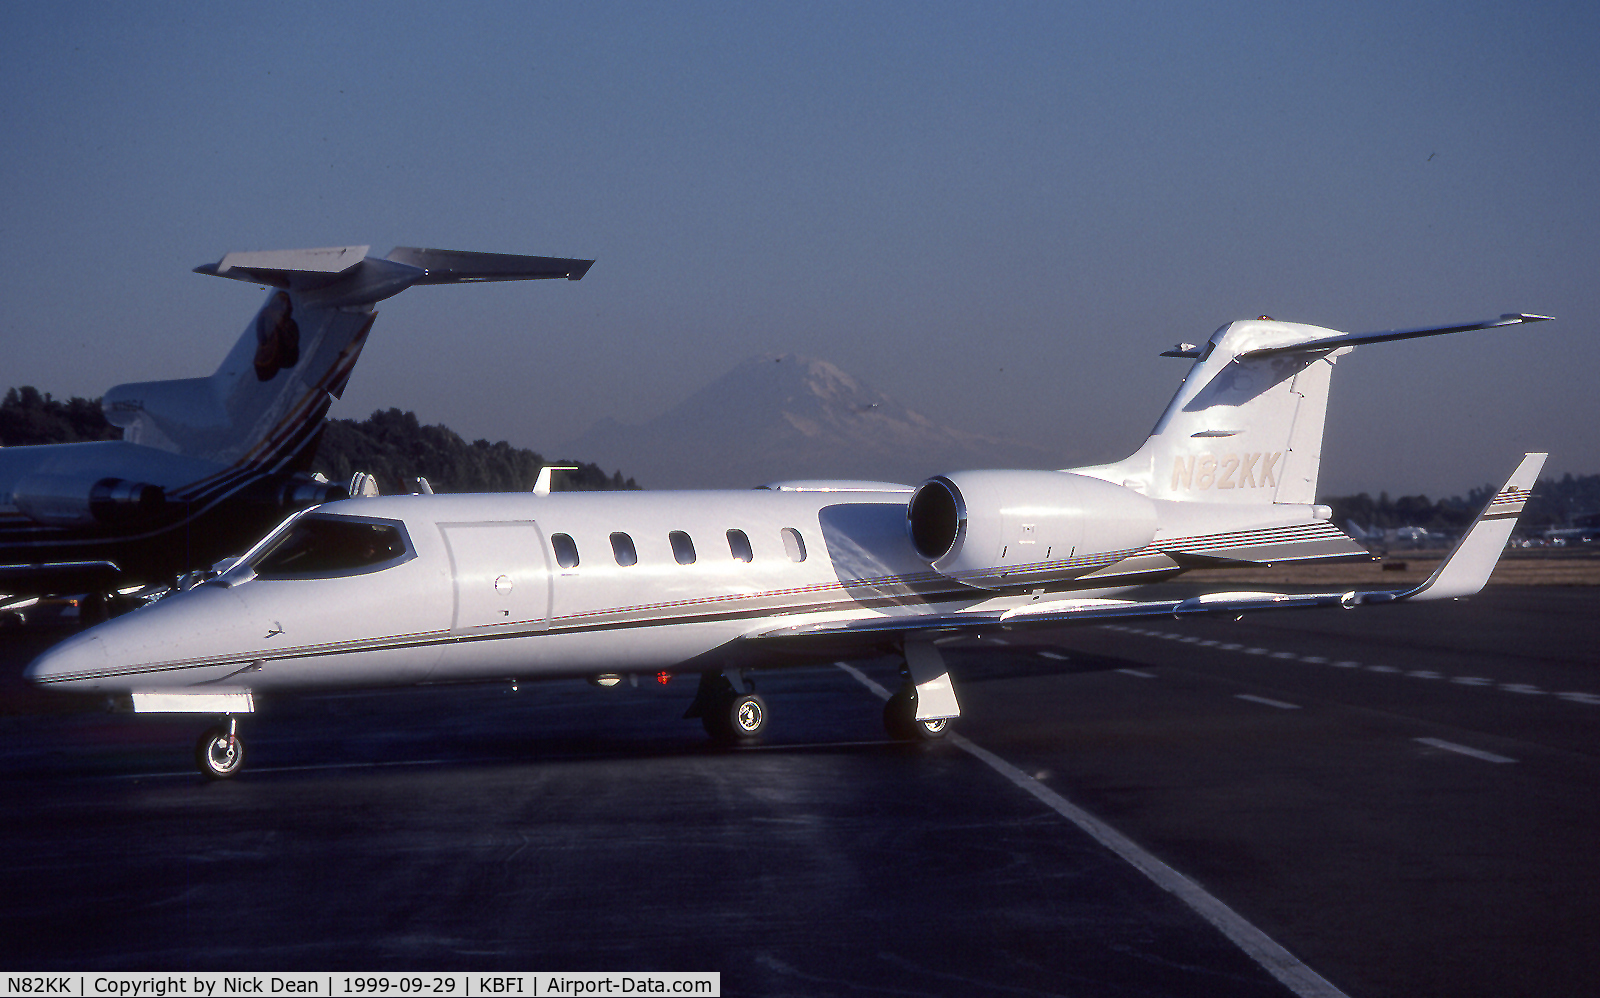 N82KK, 1992 Learjet 31A C/N 31A-054, KBFI